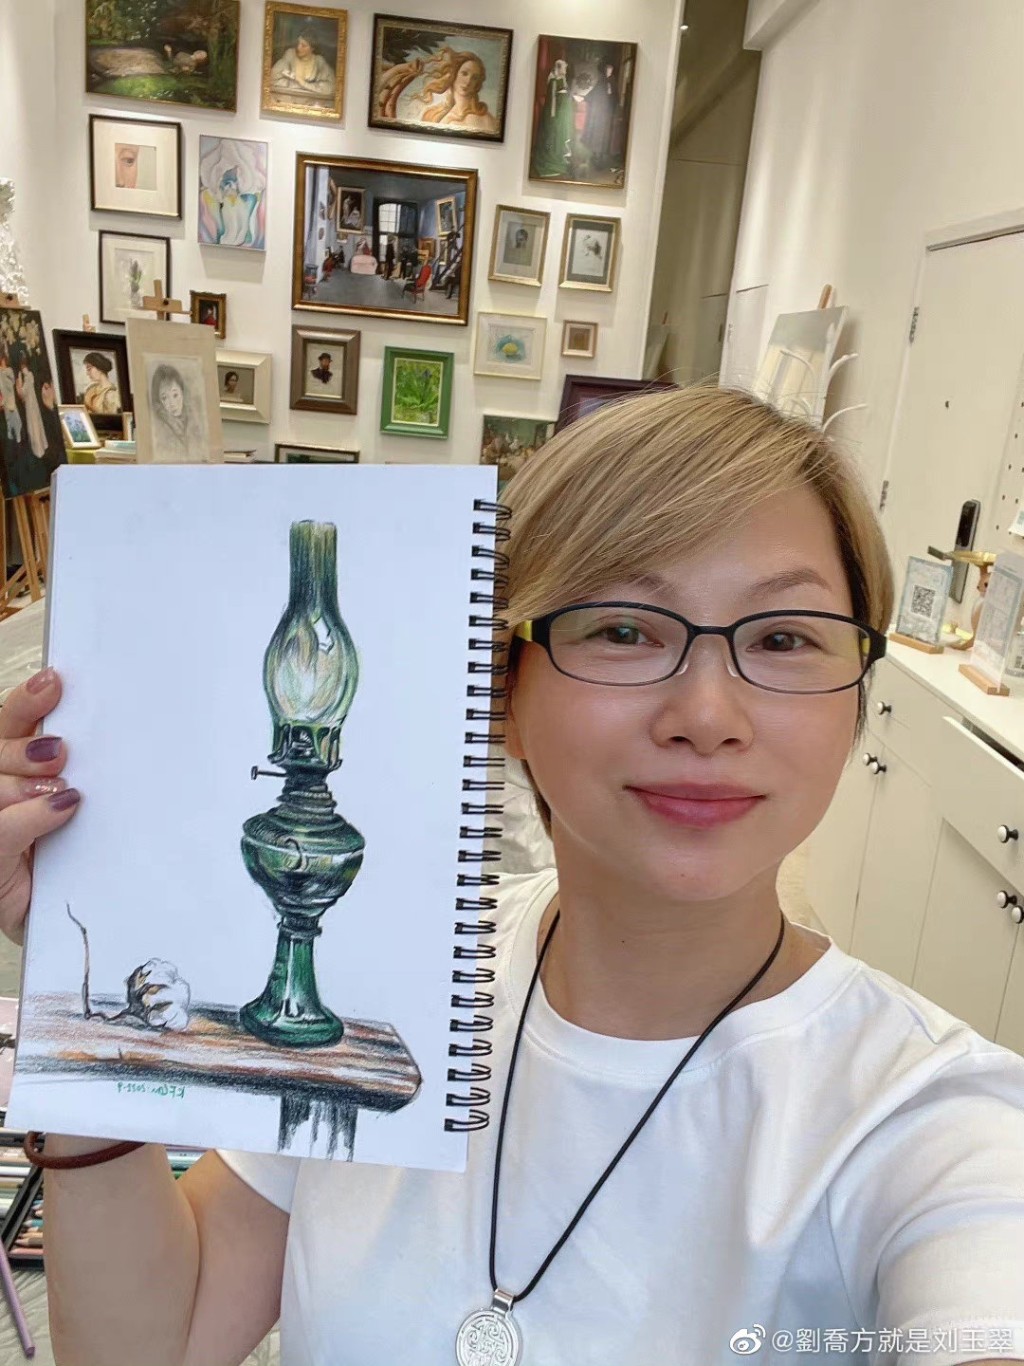 刘玉翠近年爱上绘画，不时在社交网分享画作，画功亦相当不错。